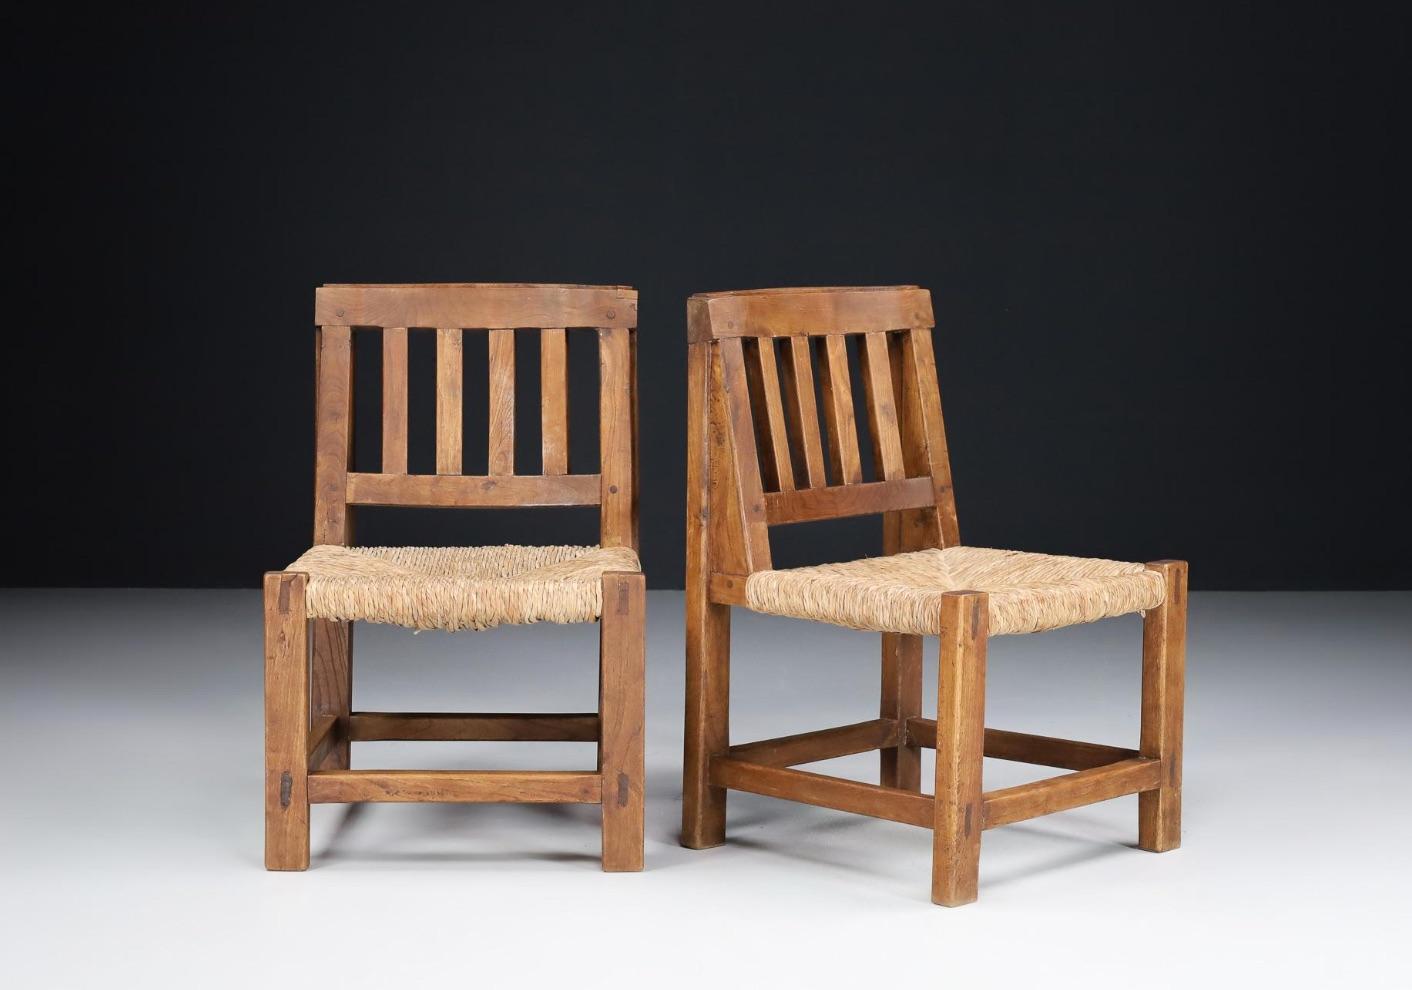 Ces chaises sont fabriquées à partir d'un cadre solide en bois de pin et ont une assise traditionnelle en jonc.  Le style est à la fois rustique/primitif et sophistiqué. 